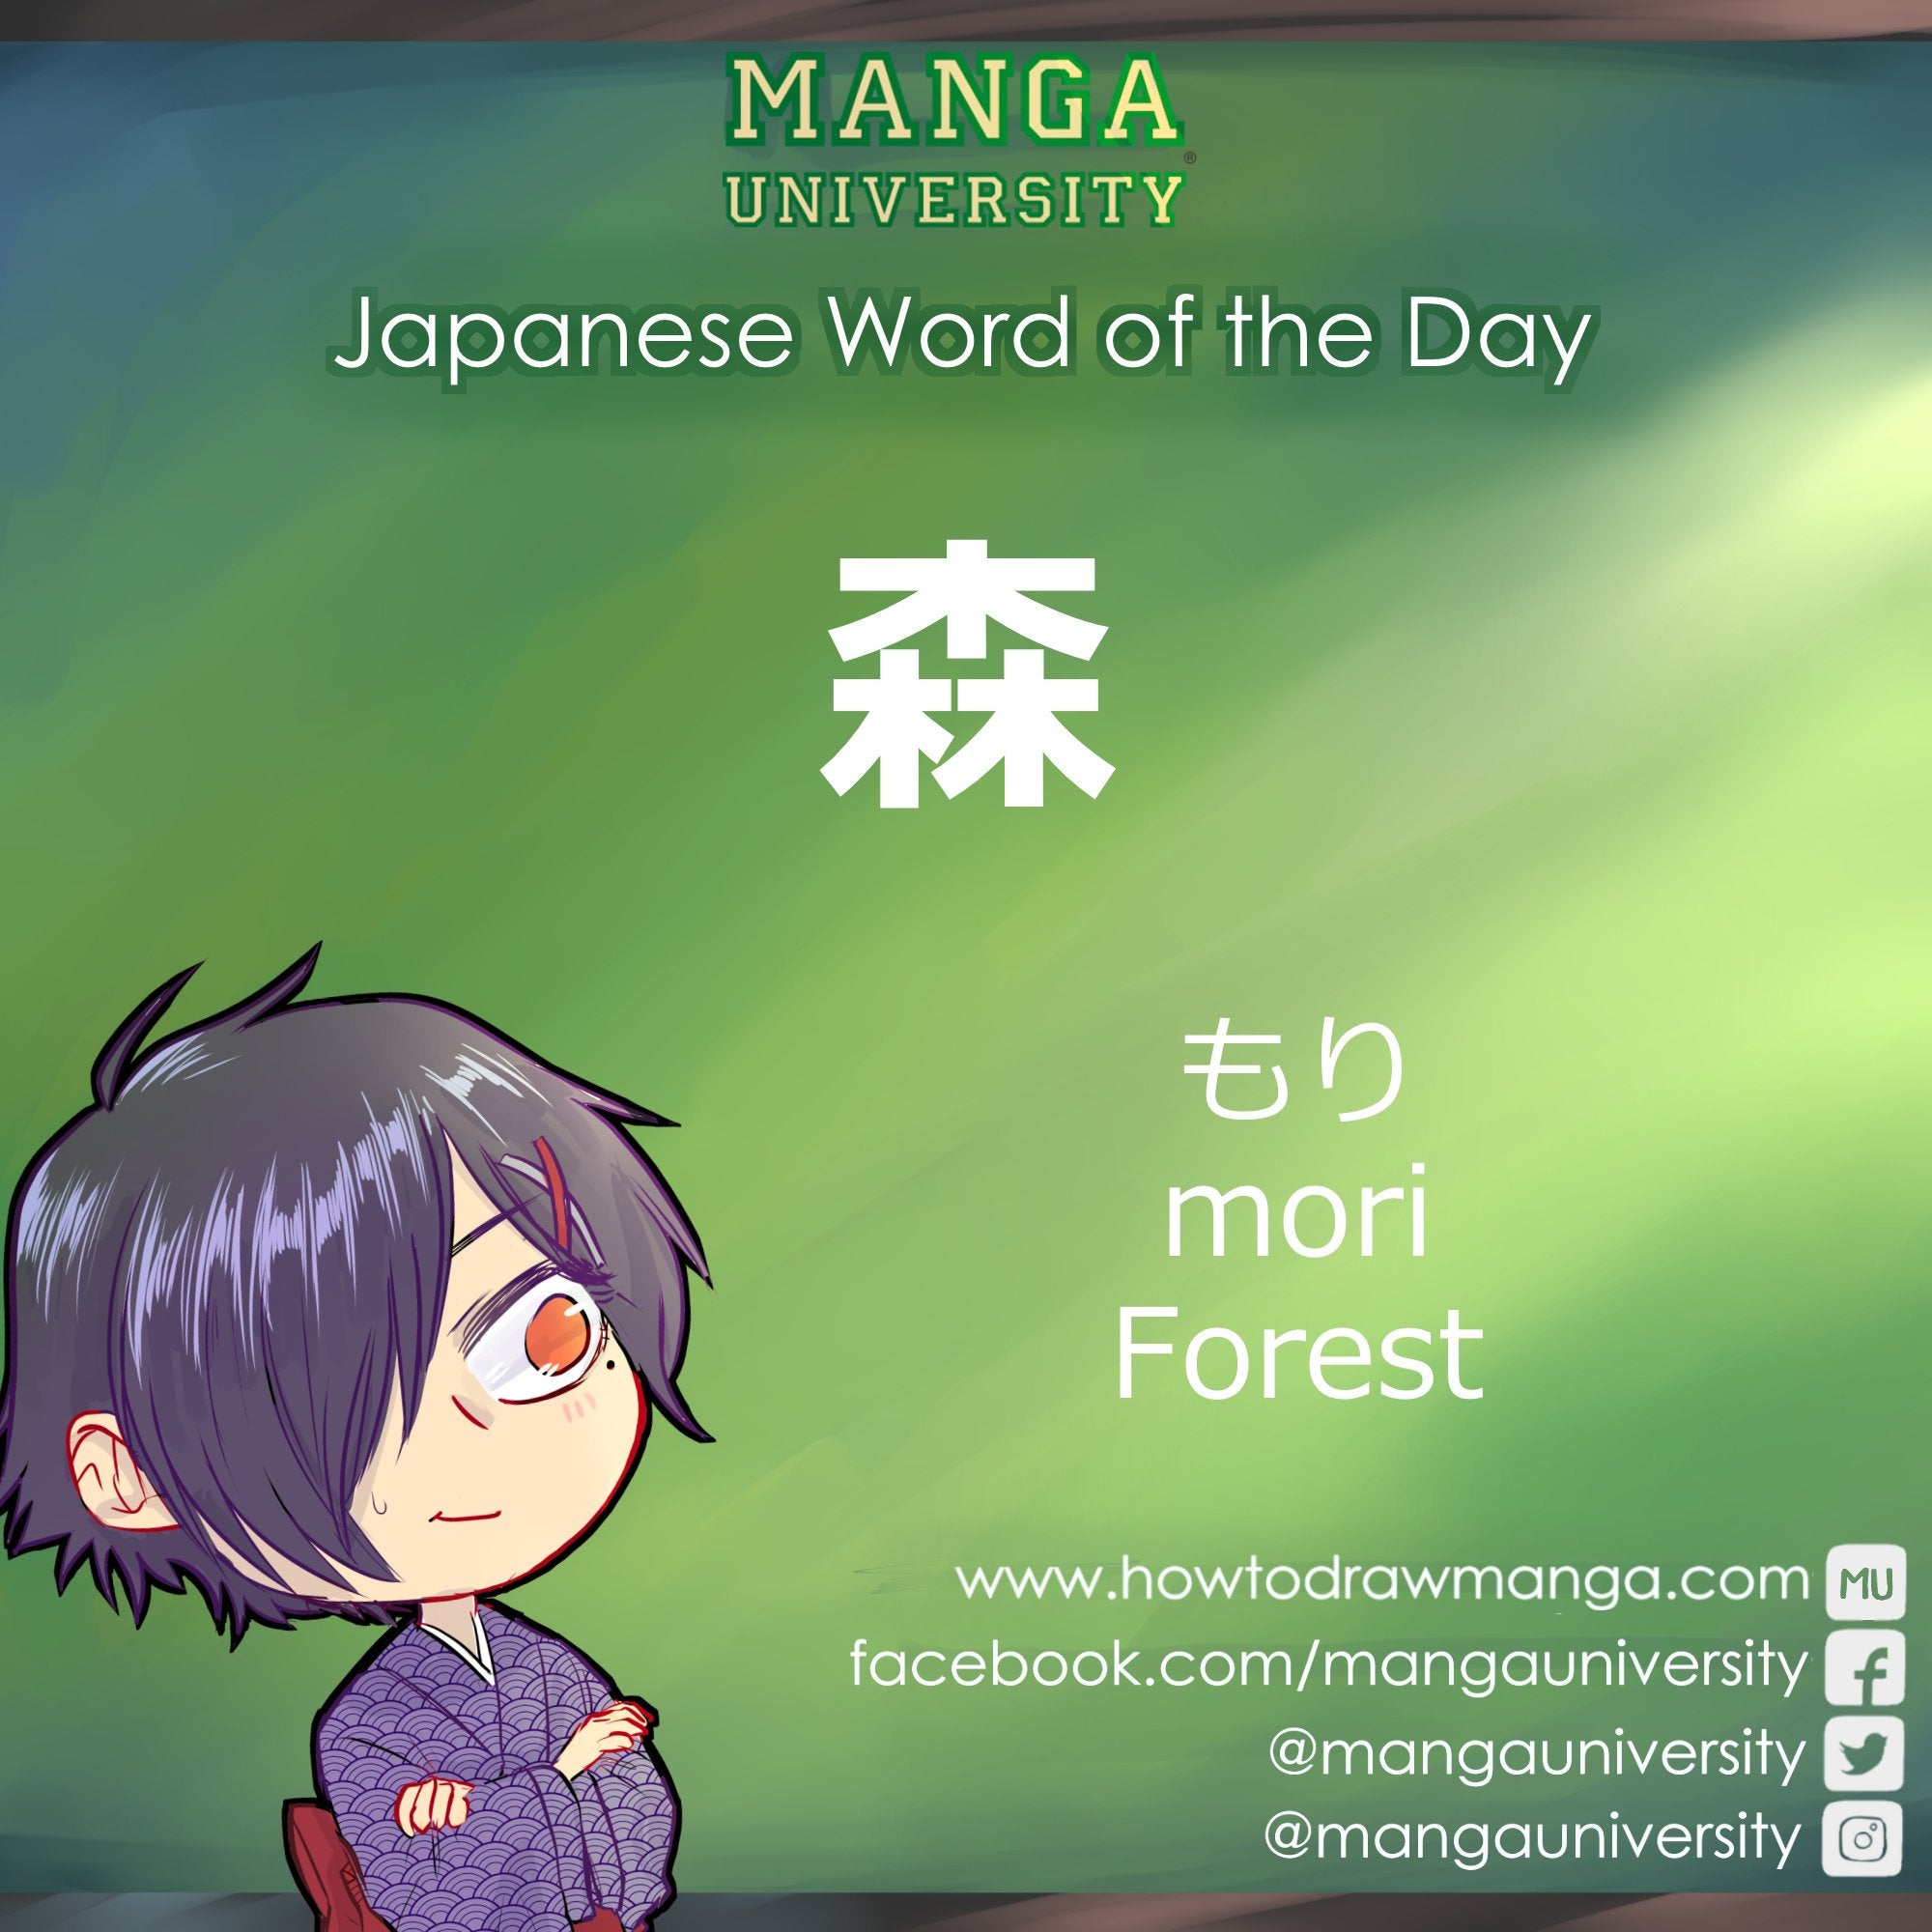 森 (もり / mori) — forest